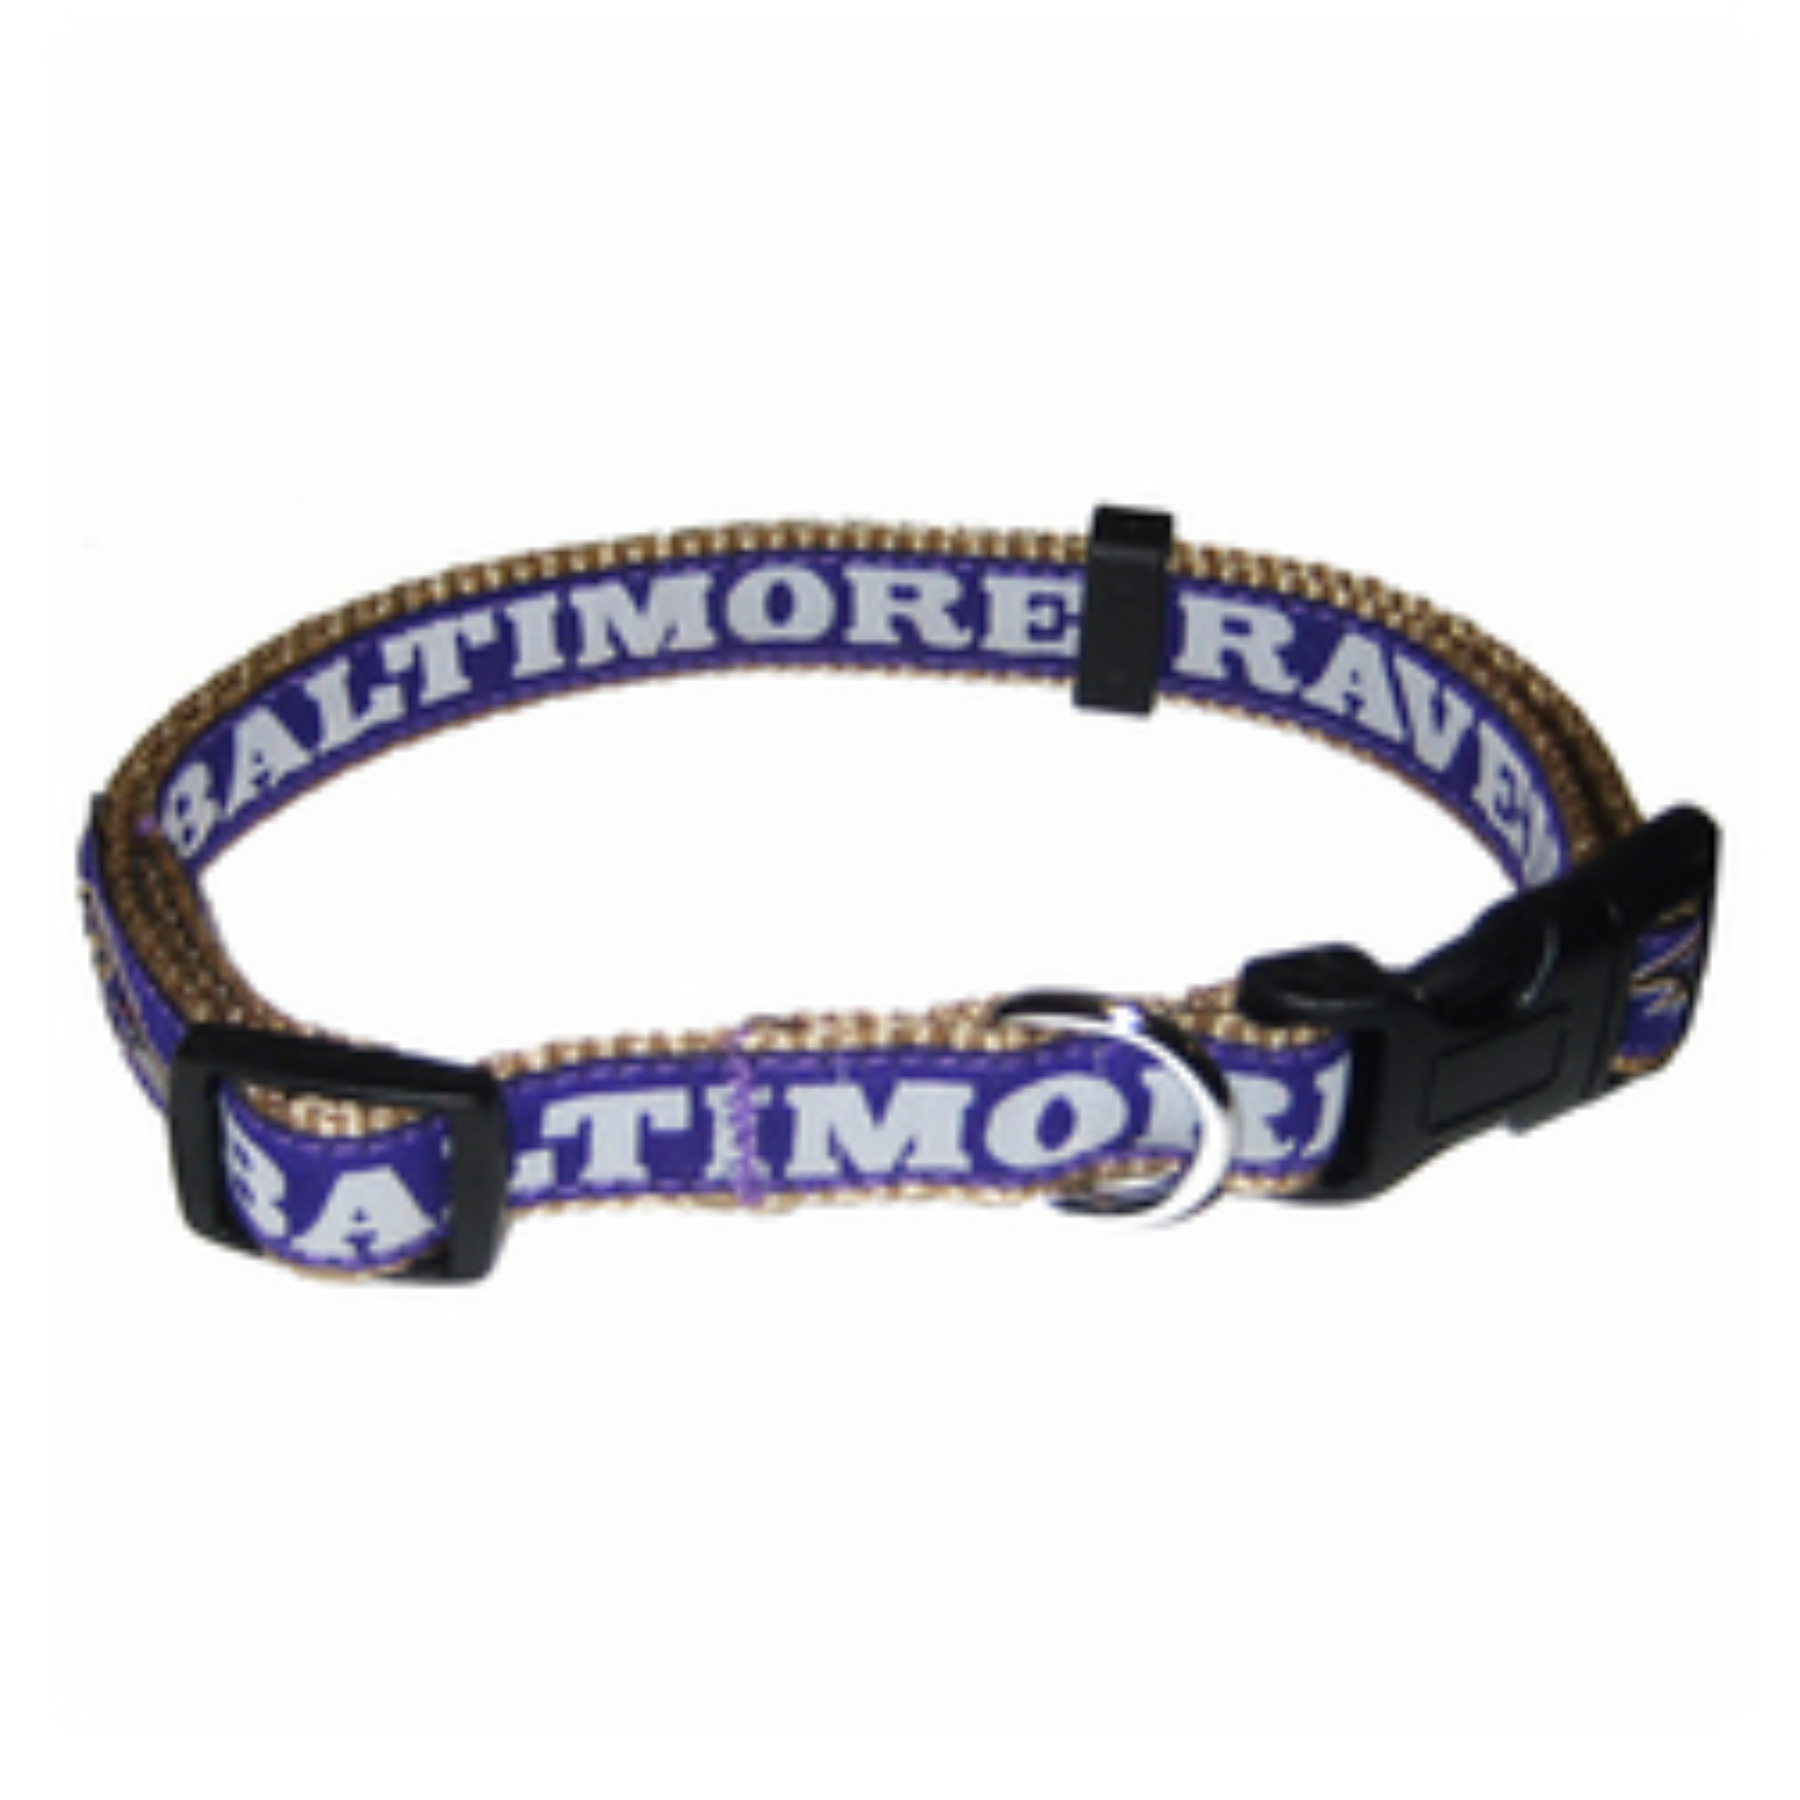 Baltimore Ravens Dog Collar - Ribbon